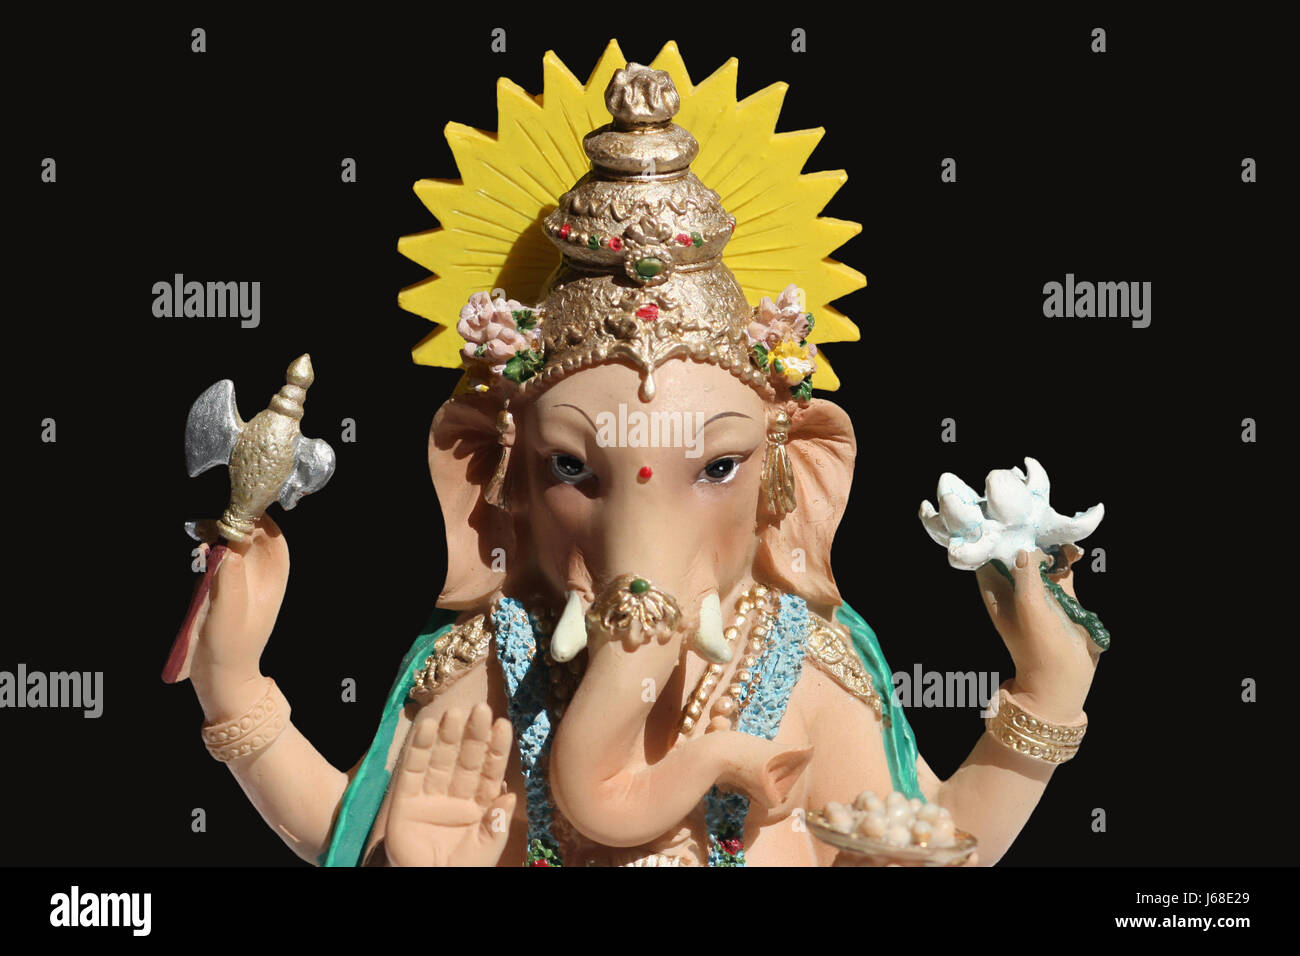 La religione dei religiosi dio credono divinità ganesha ganesh hinduismus elephant Foto Stock